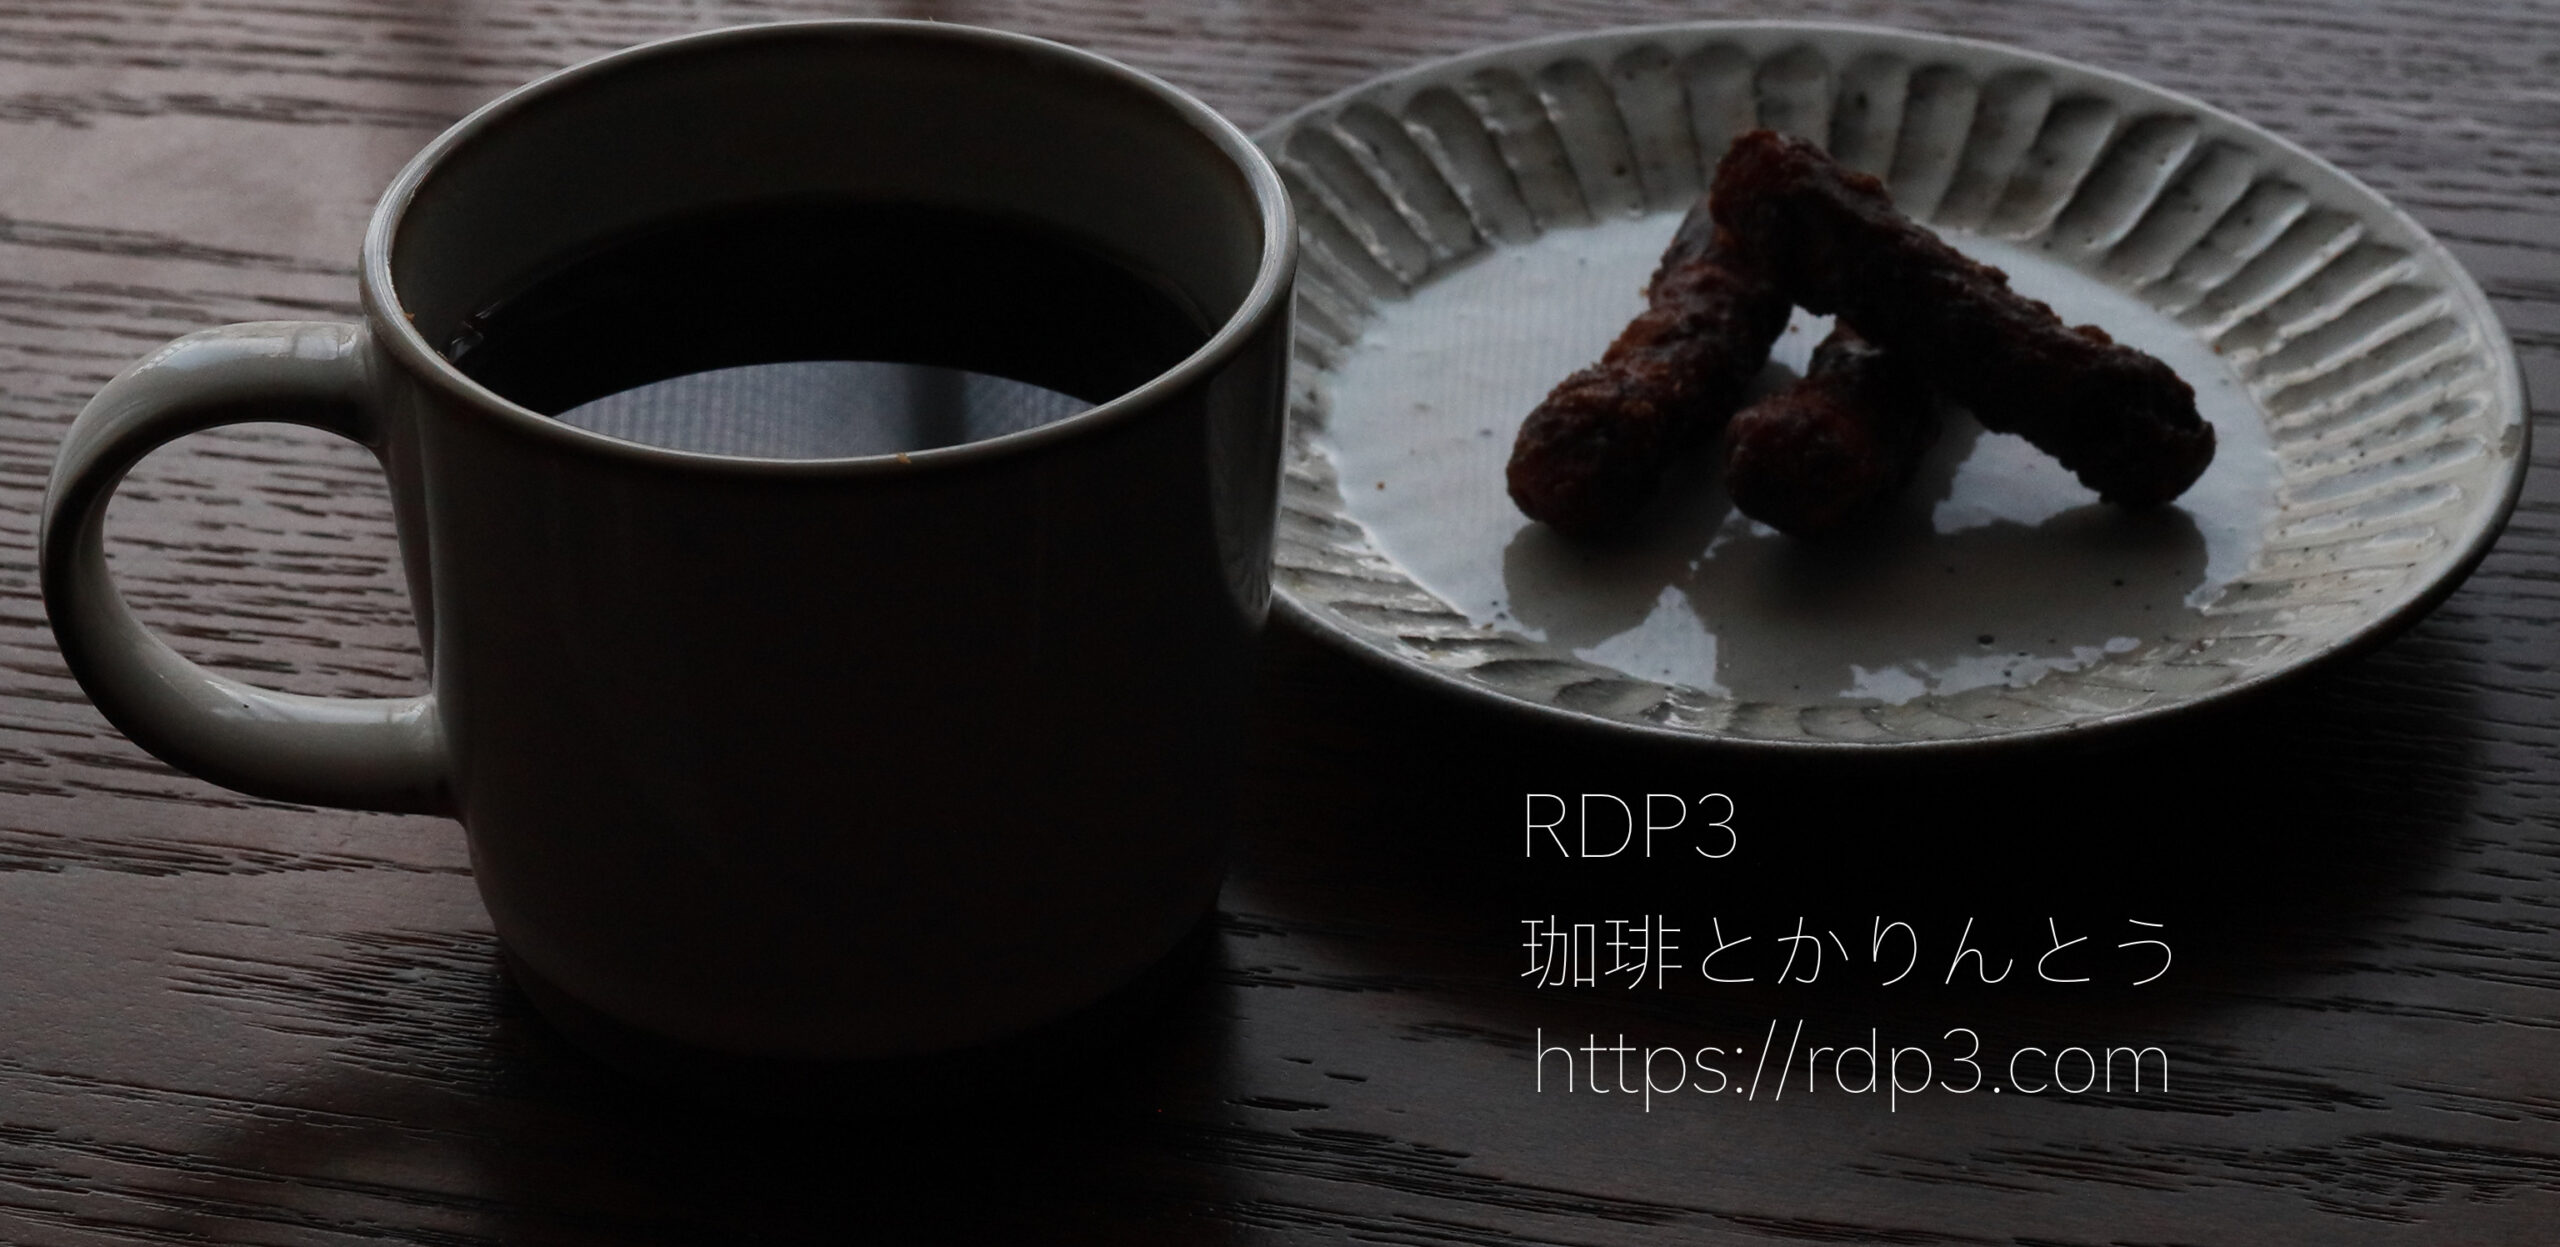 RDP3 珈琲とかりんとう TOP